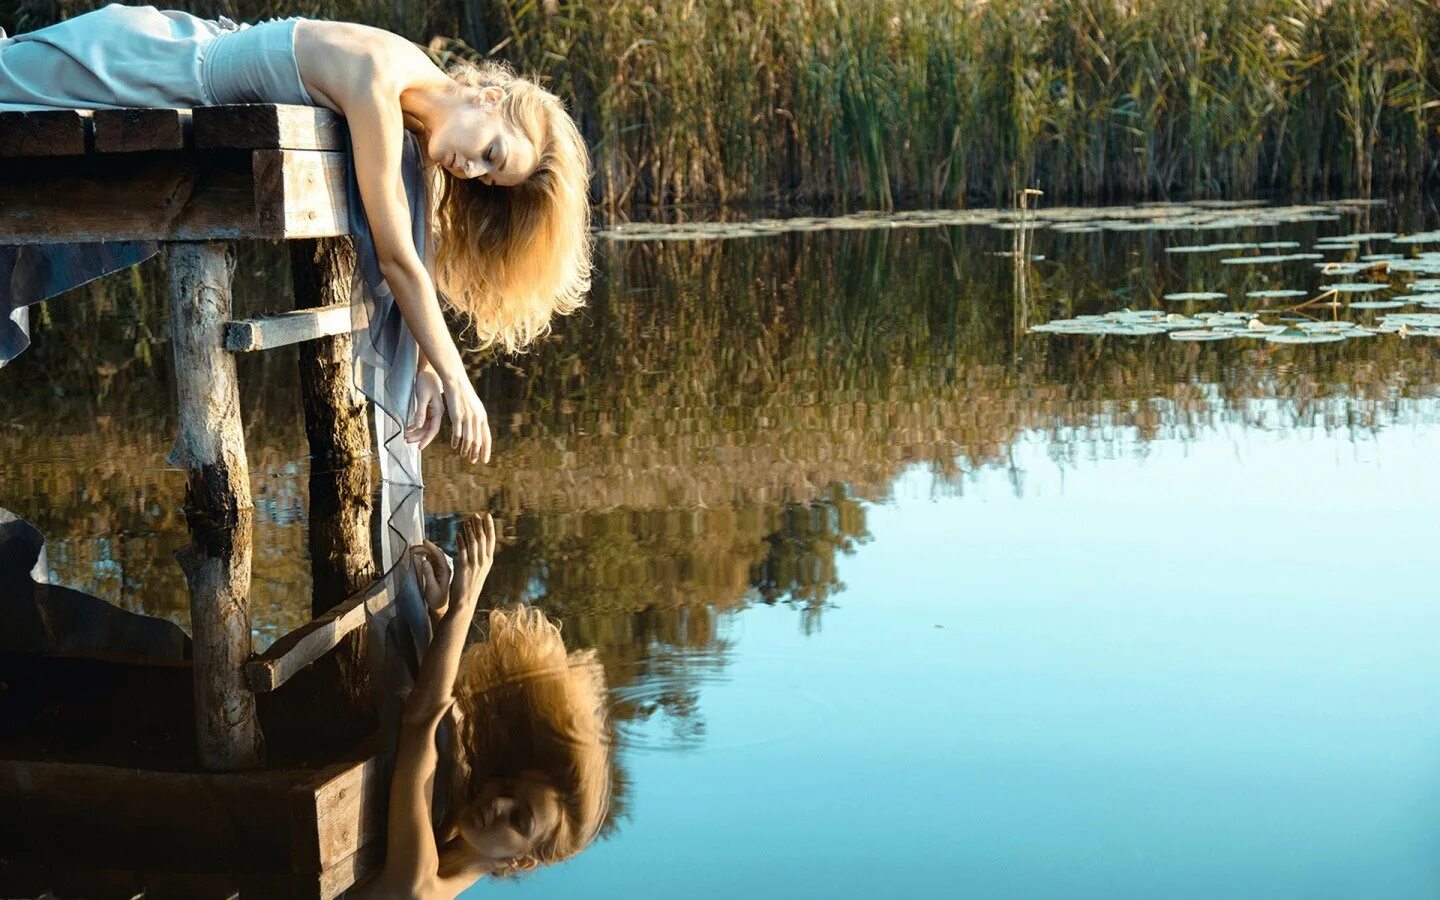 Фотосессия на мостике у воды. Девушка в воде. Отражение девушки в воде. Отражение в воде.